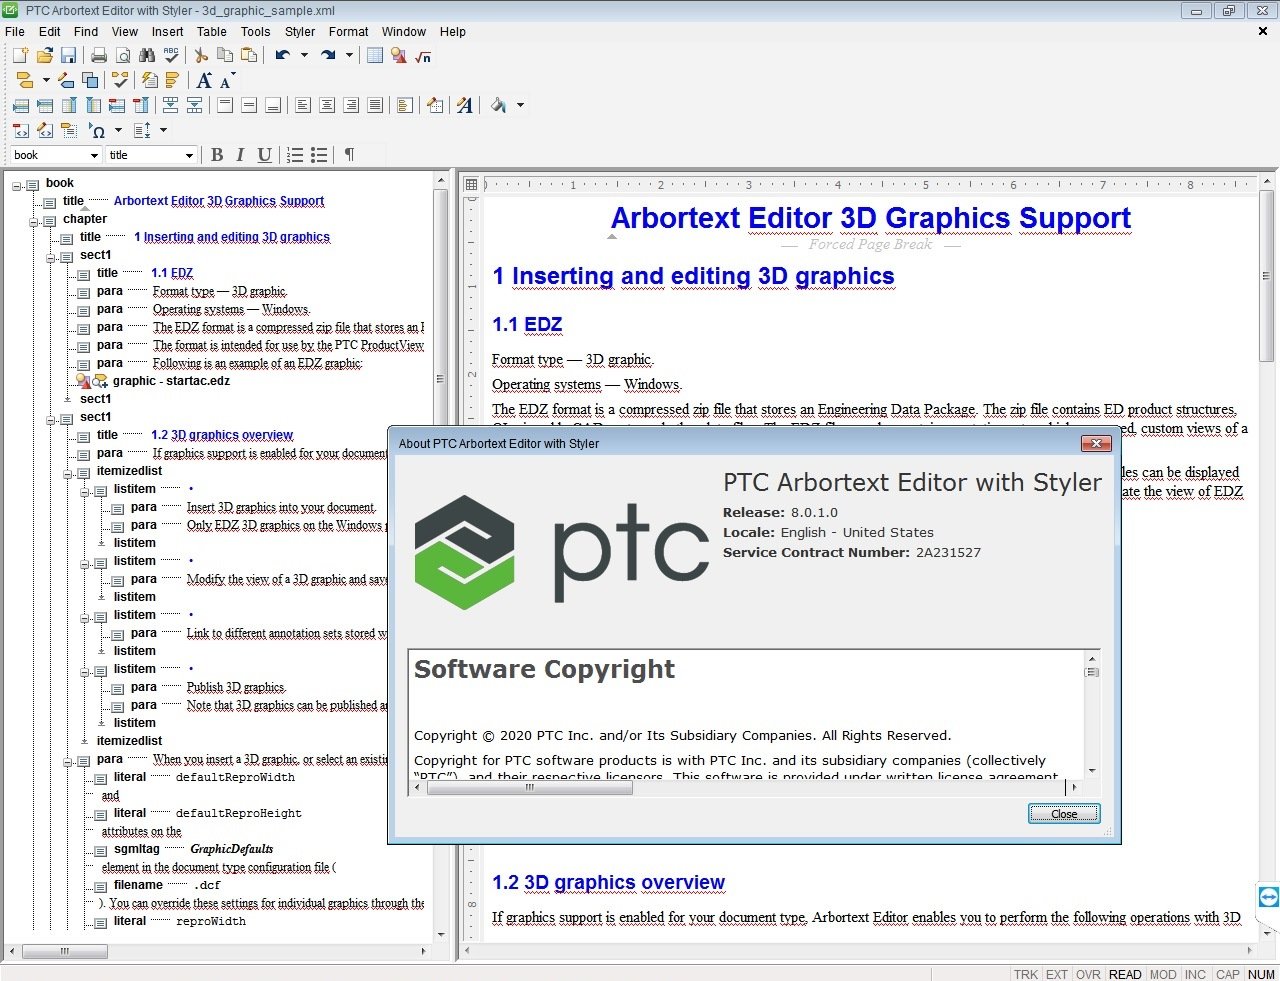 PTC Arbortext Editor 8.0.1.0 (x64) Multilanguage